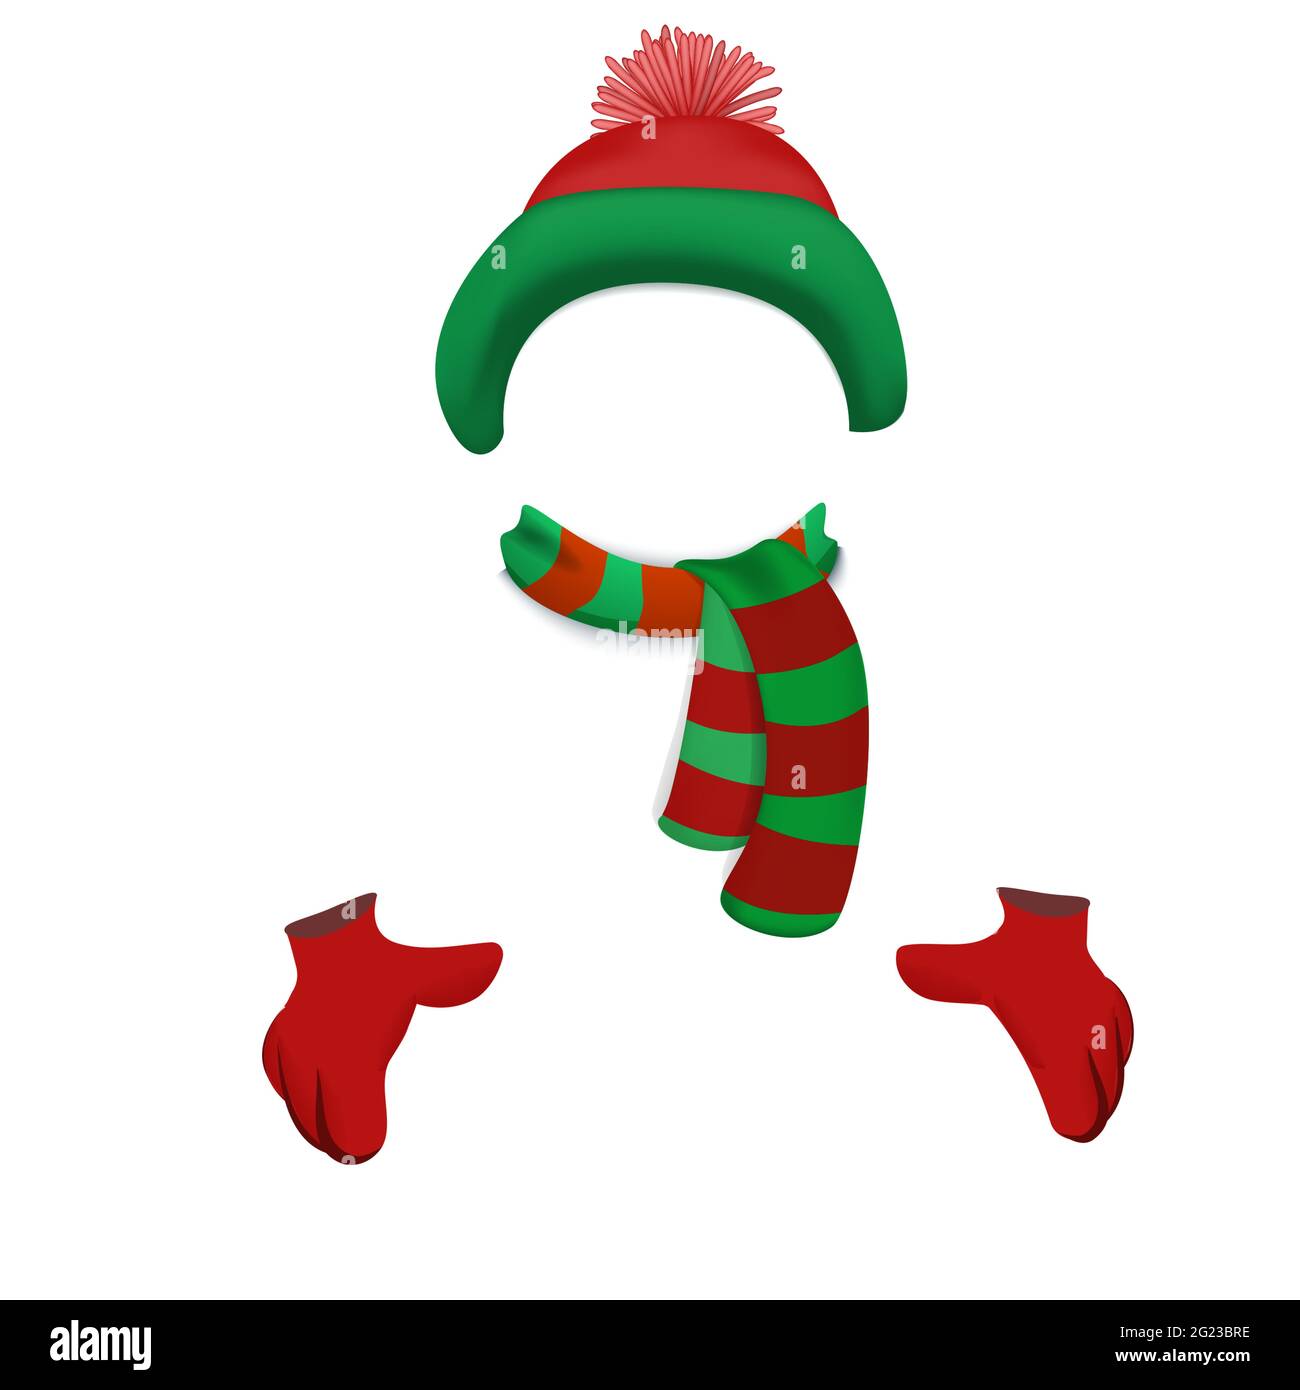 Bonnet, écharpe et gants colorés pour enfants aux couleurs traditionnelles  de Noël. Illustration vectorielle. Chapeau d'hiver chaud avec pompon isolé  sur fond blanc Image Vectorielle Stock - Alamy